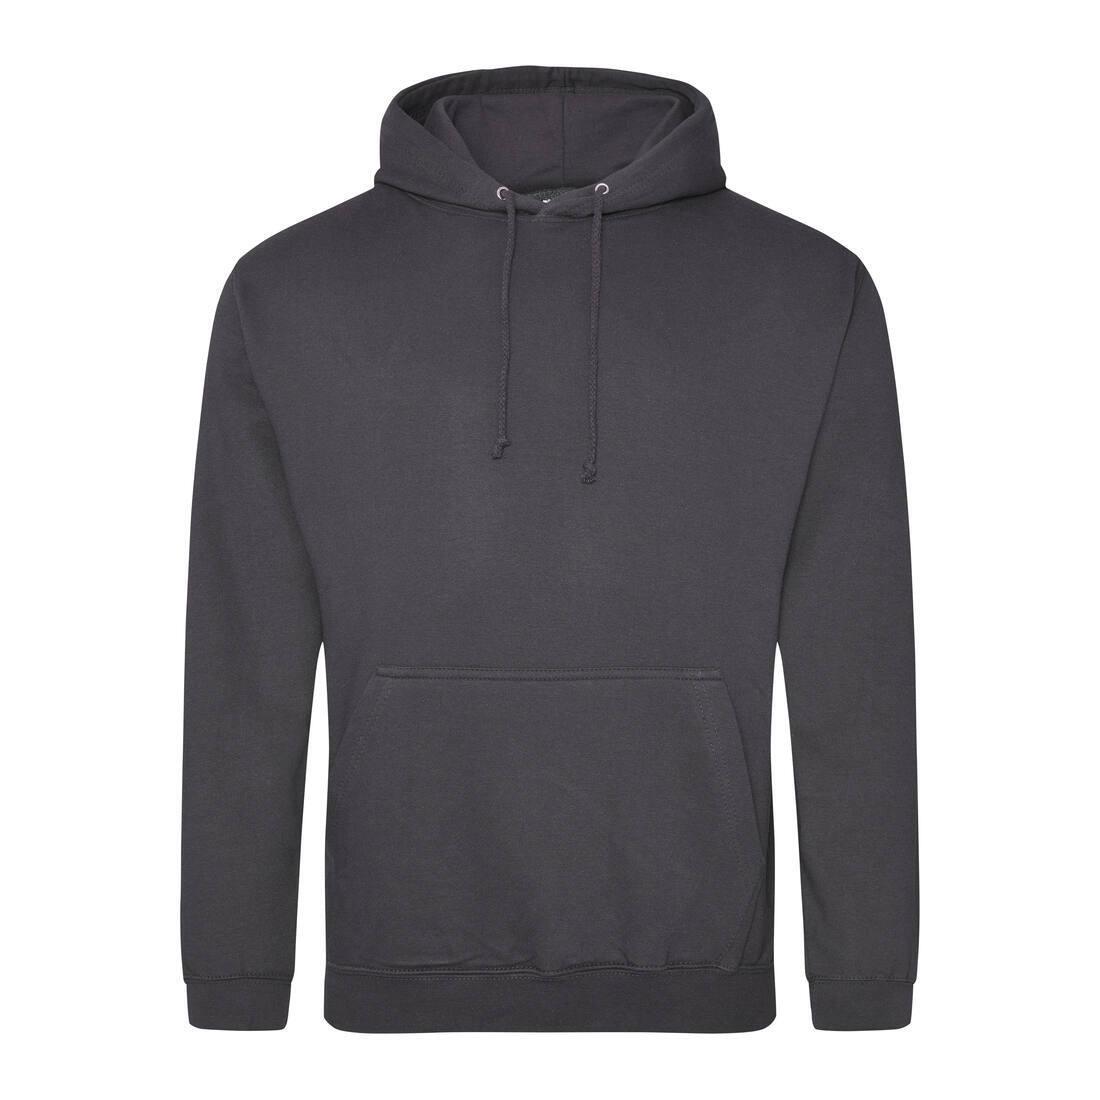 Heren hoodie storm grey perfect voor bedrukking van logo, tekst, foto